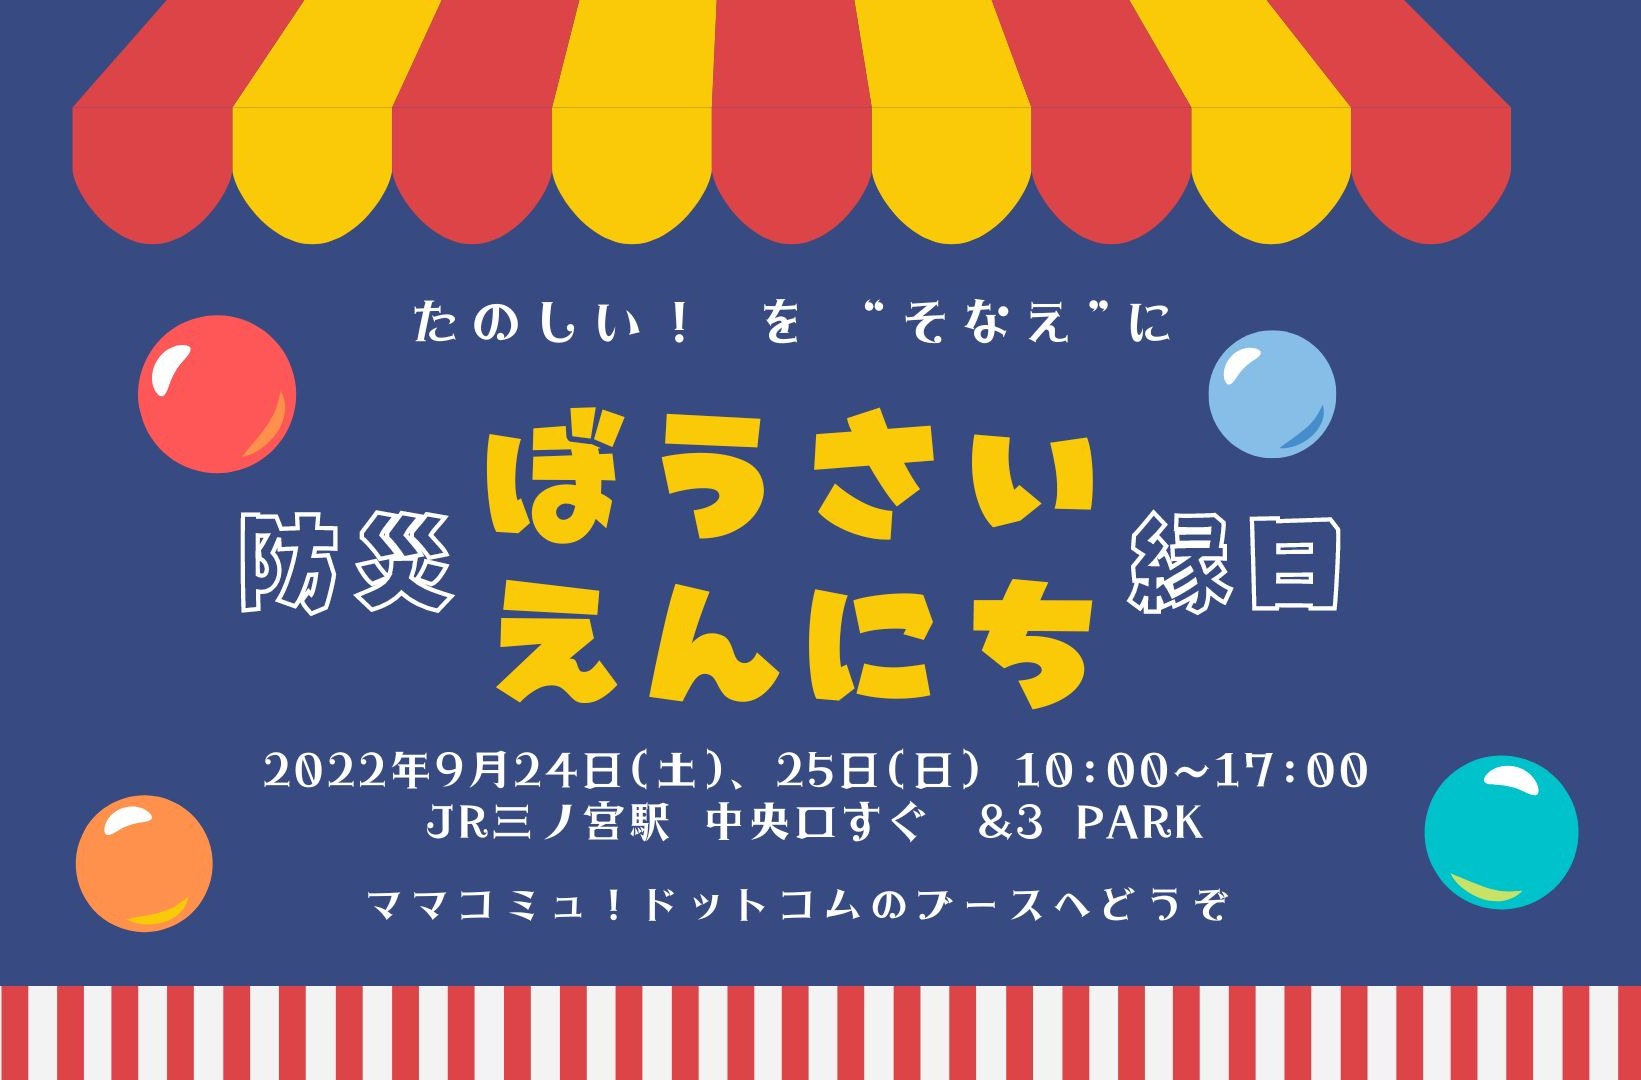 ぼうさいえんにちを開催します。9月24日、25日の土日はJR三宮駅前広場へ。